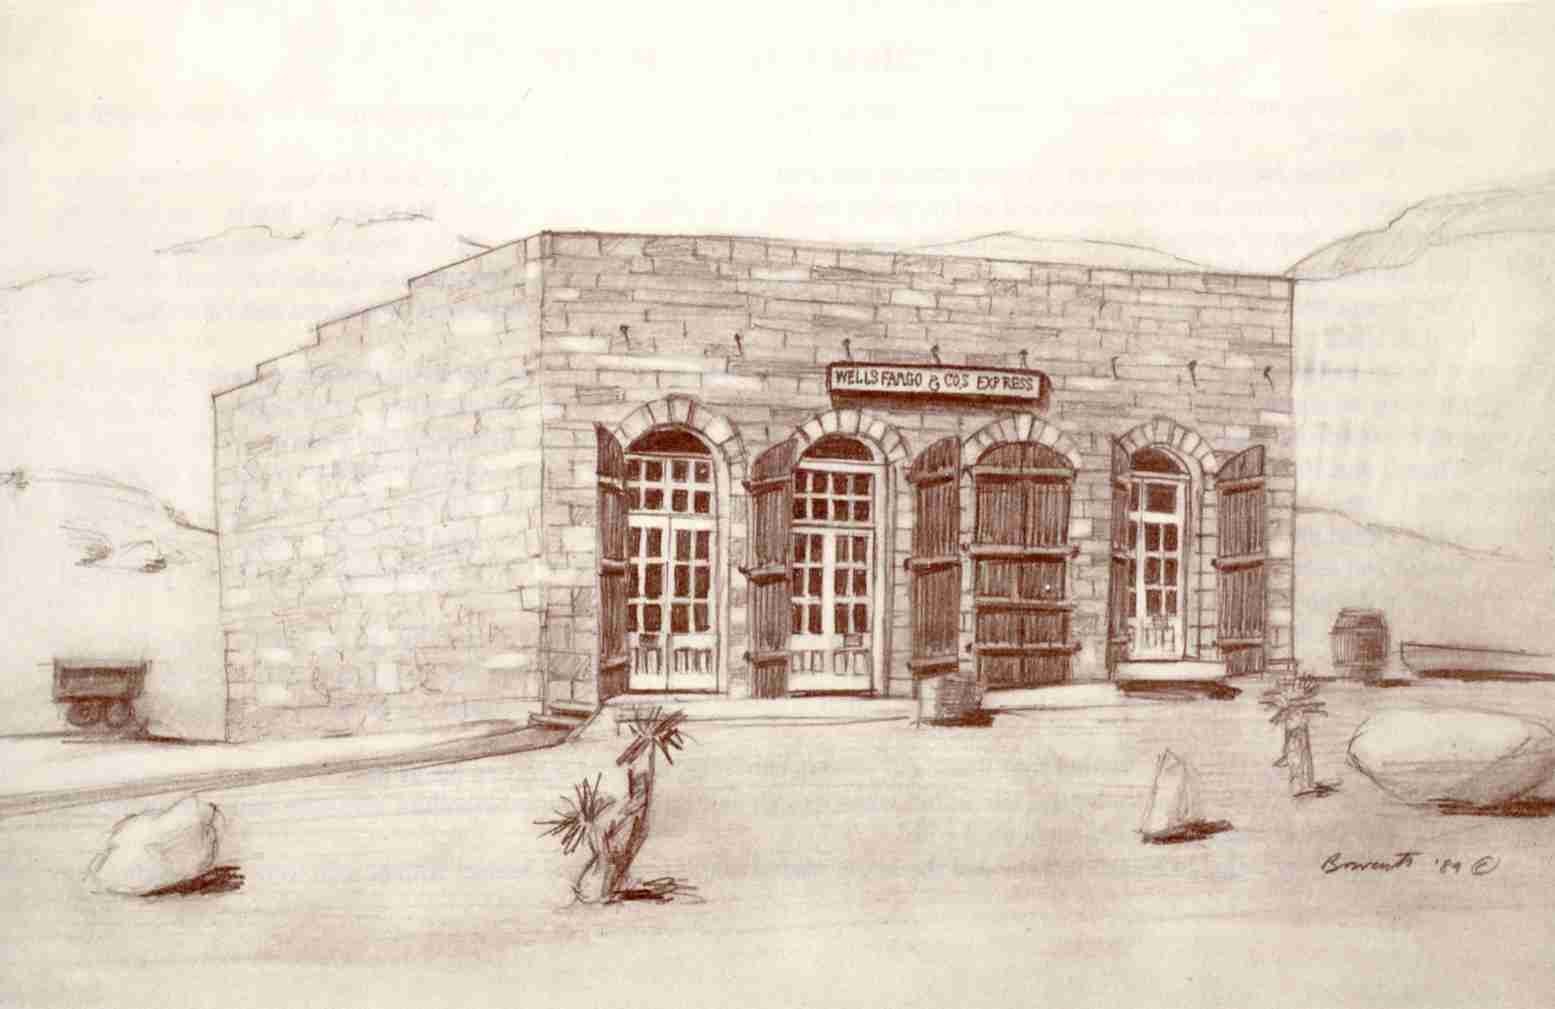 Sketch of the Wells Fargo Building